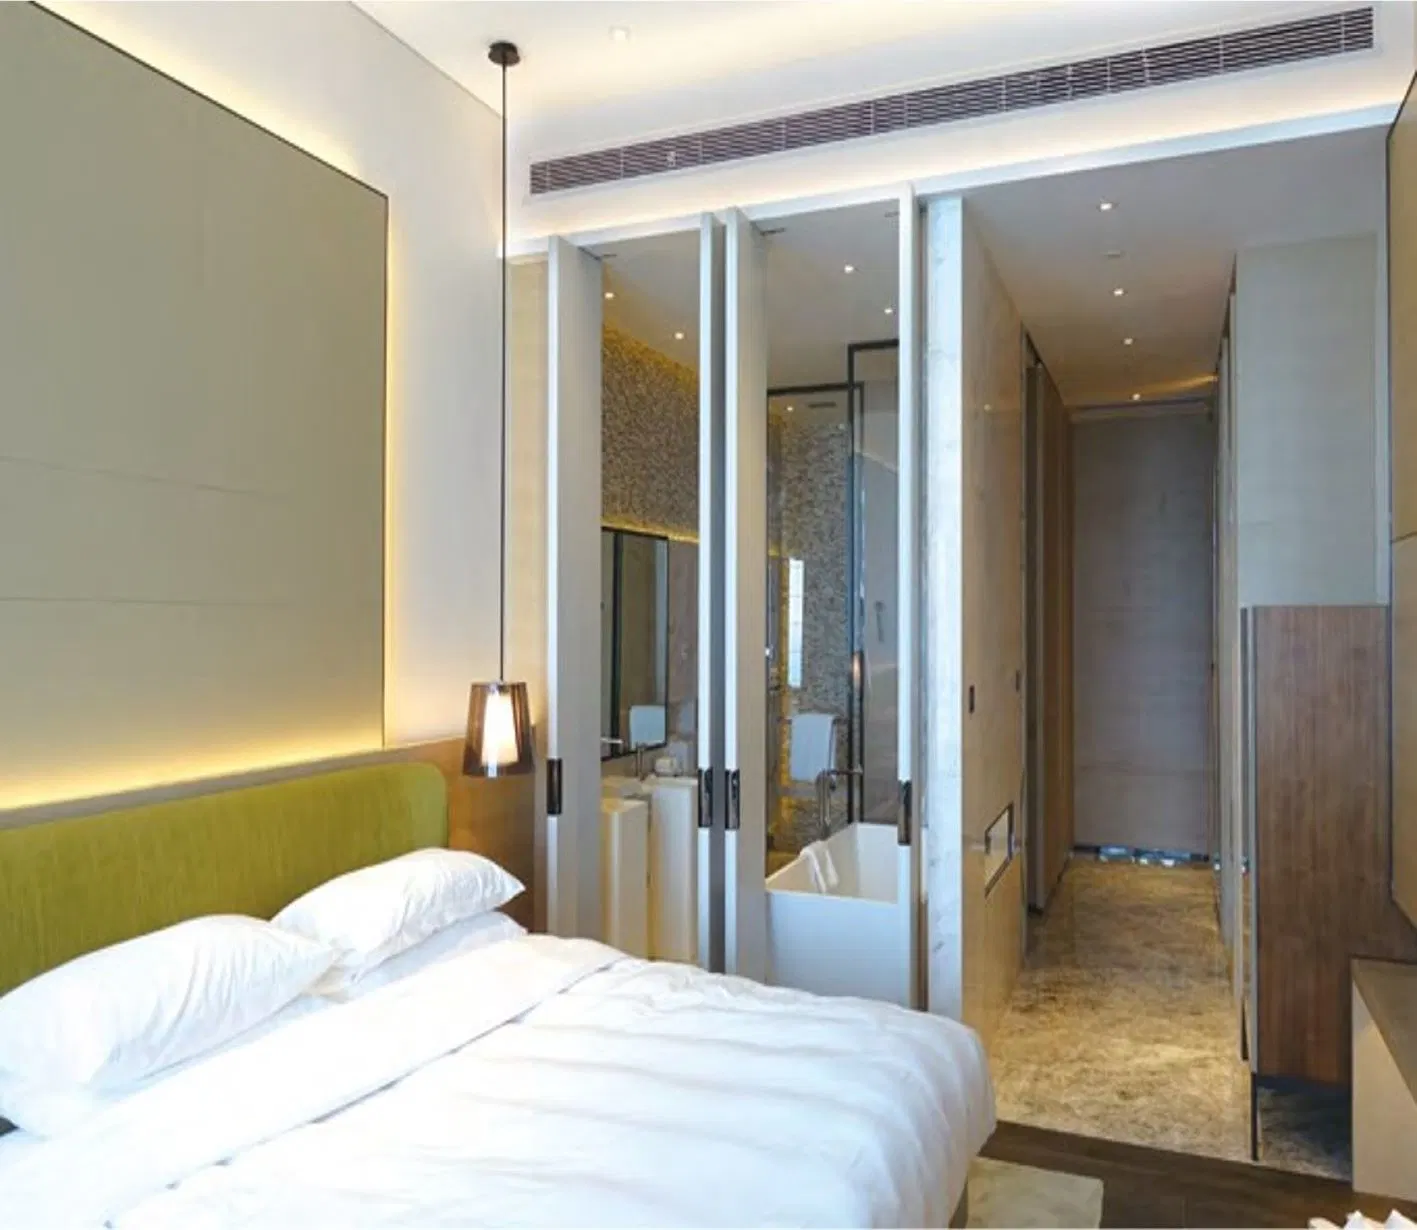 Hôtel 5 étoiles moderne design mobilier de chambre à coucher Mobilier de l'hôtel de conception personnalisée définie